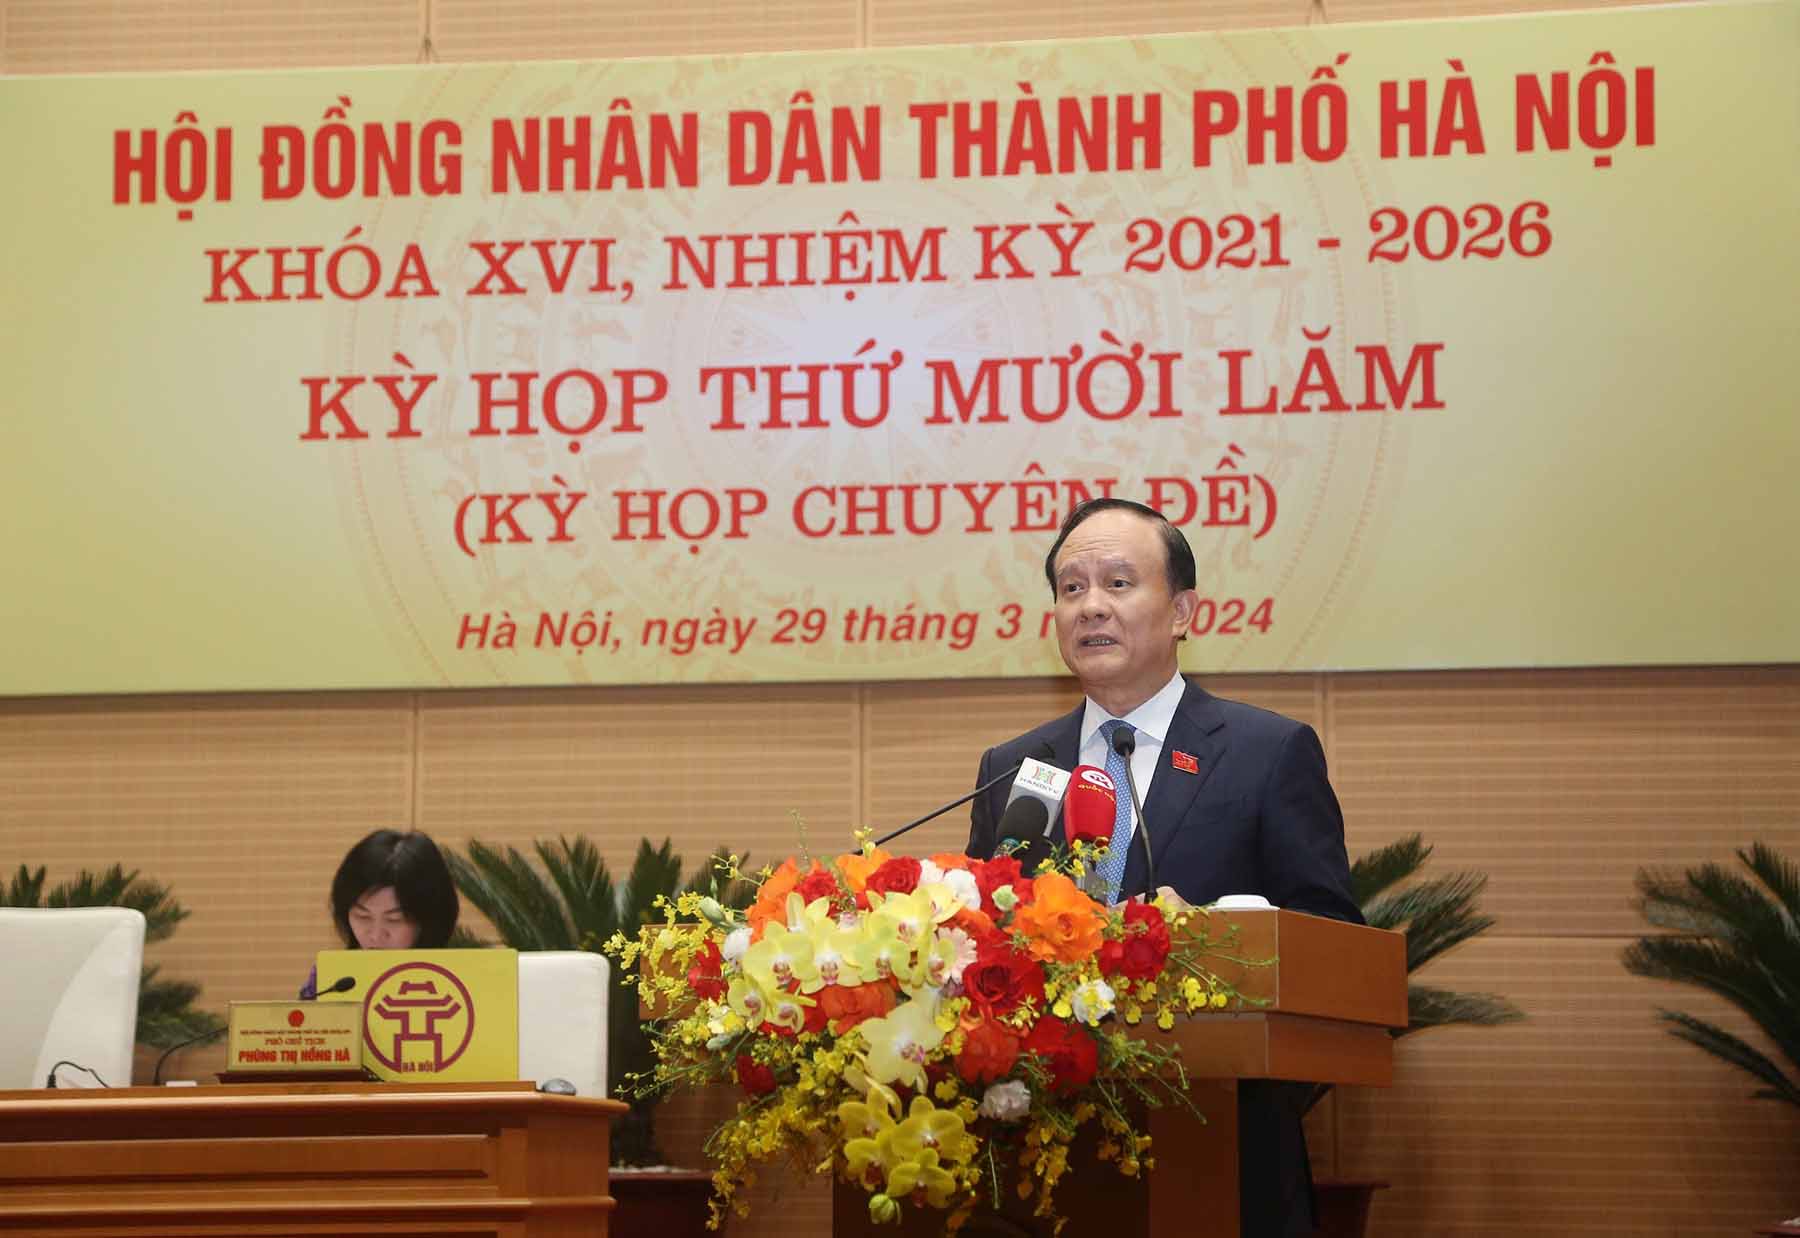 Hà Nội xem xét công tác cán bộ, kiện toàn chức danh Ủy viên UBND thành phố